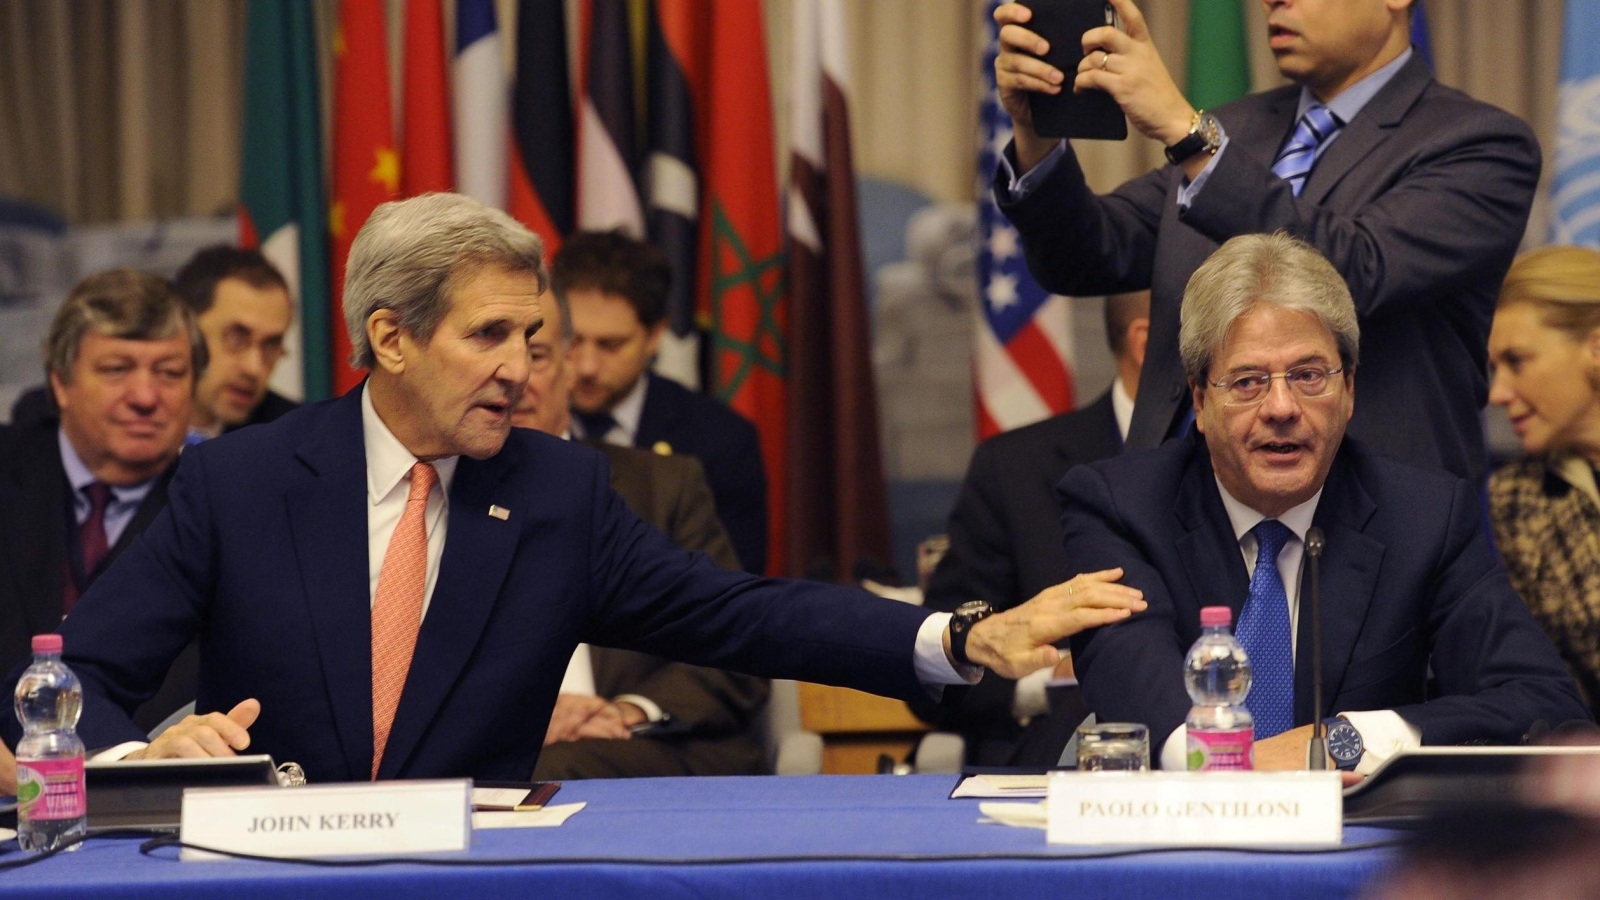 ‪‬ وزير الخارجية الإيطالي باولو جنتيلوني ونظيره الأميركي جون كيري خلال اجتماع روما بشأن ليبيا(الأوروبية)